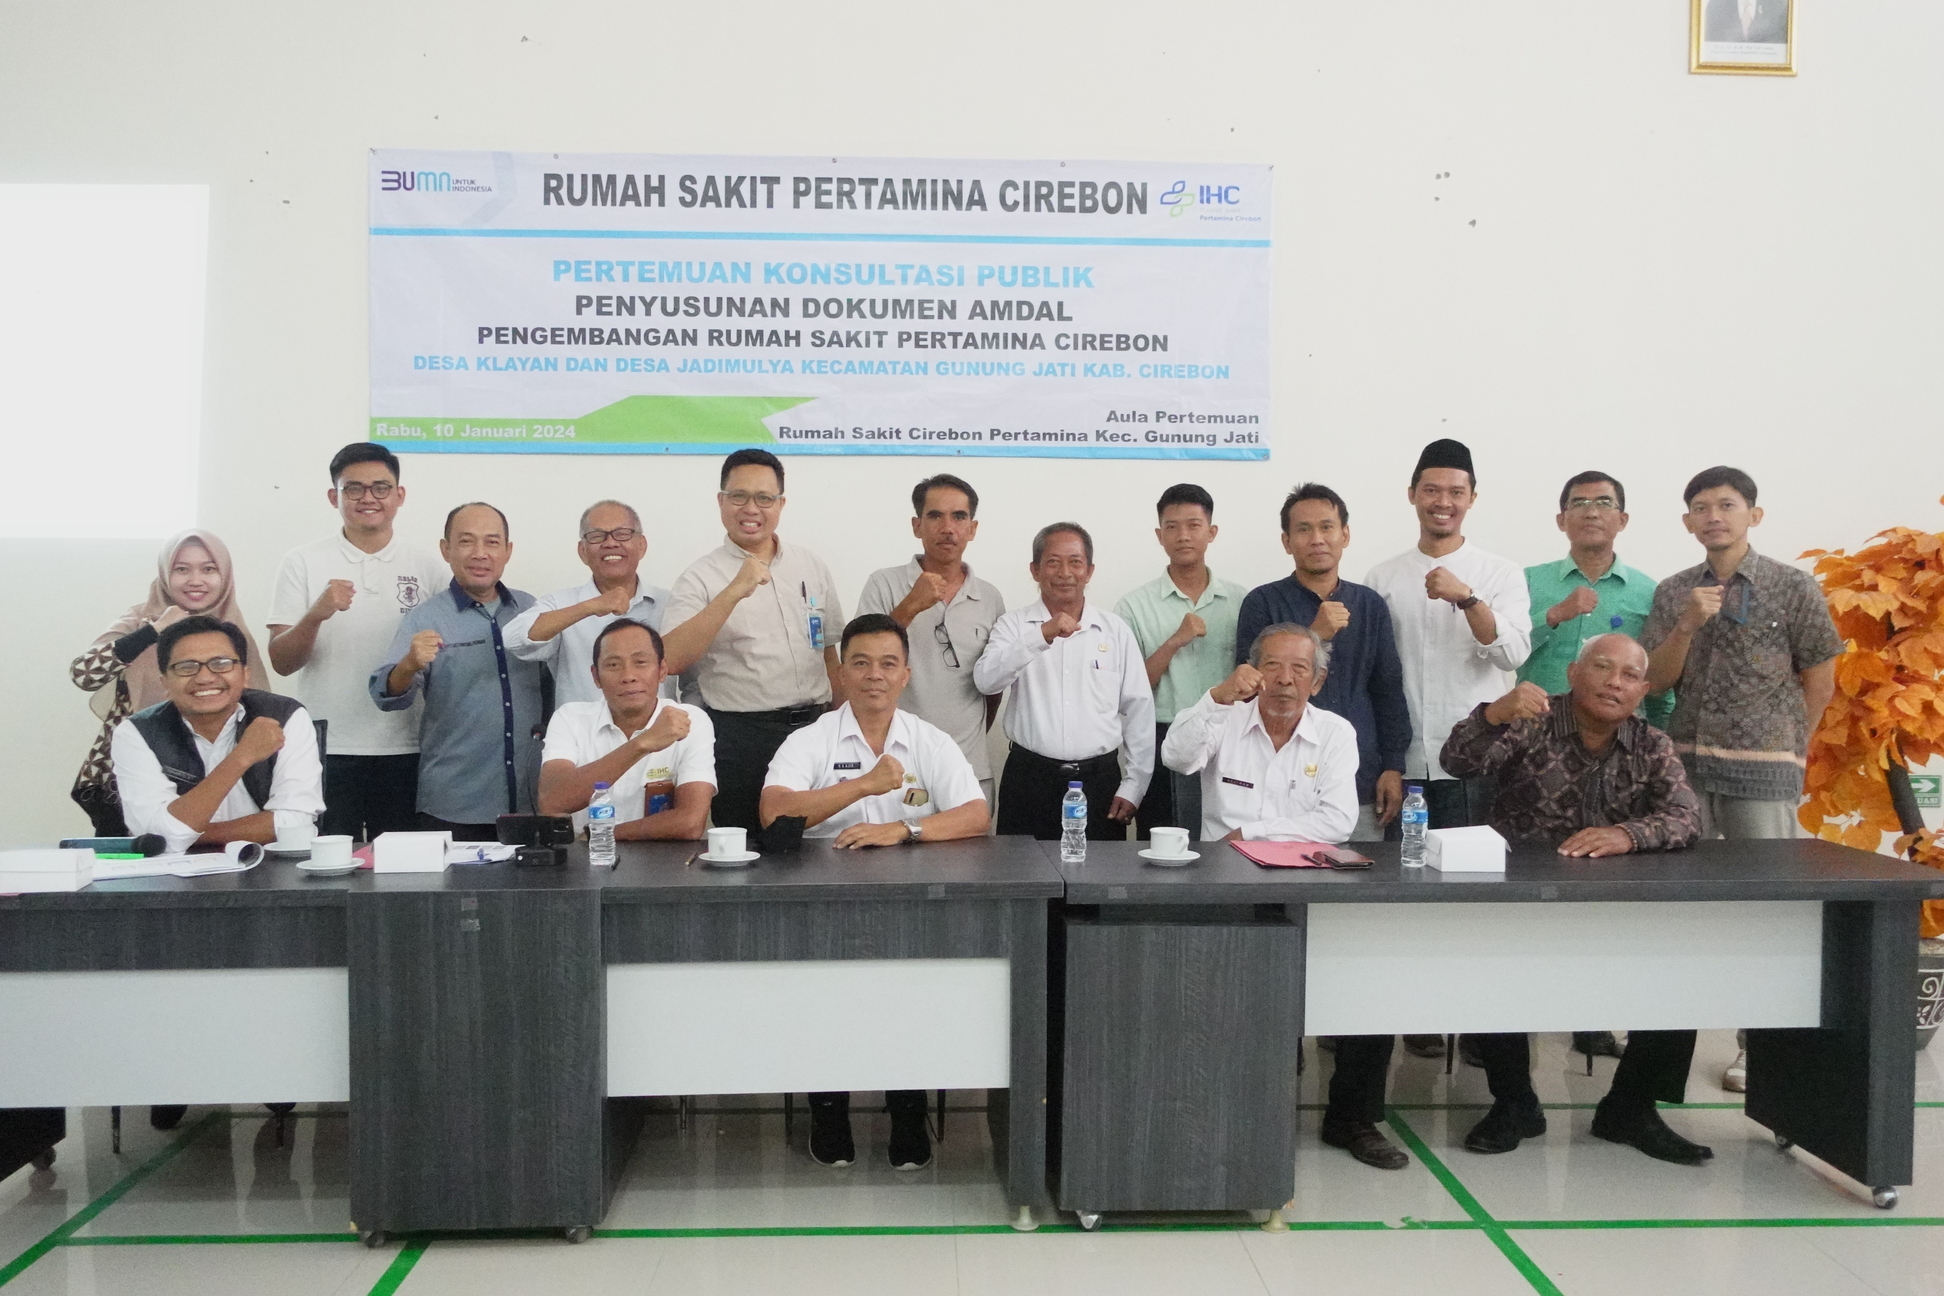 Pertemuan Konsultasi Publik Kegiatan AMDAL Pengembangan Rumah Sakit Pertamina Cirebon